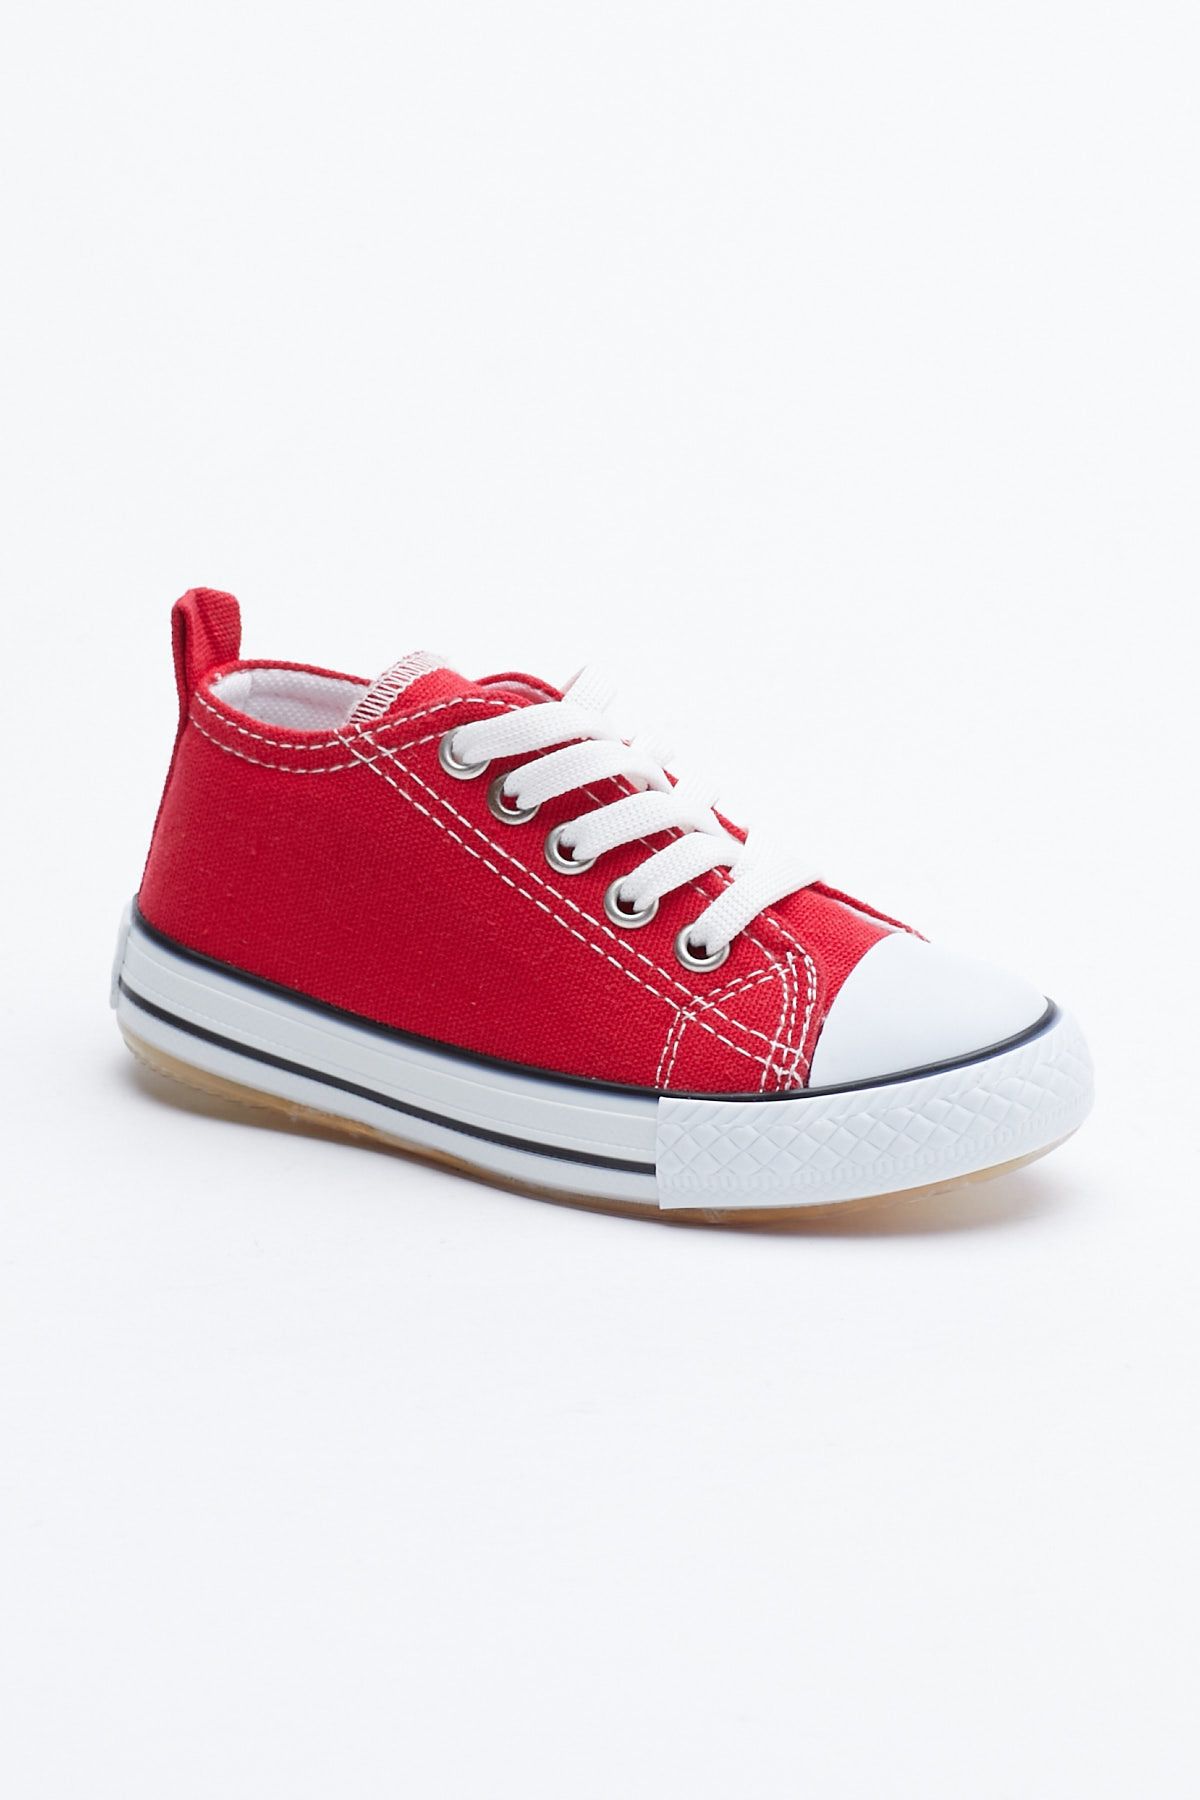 Tonny Black Çocuk Unisex Kırmızı Işıklı Bağcıklı Spor Ayakkabı Tb998